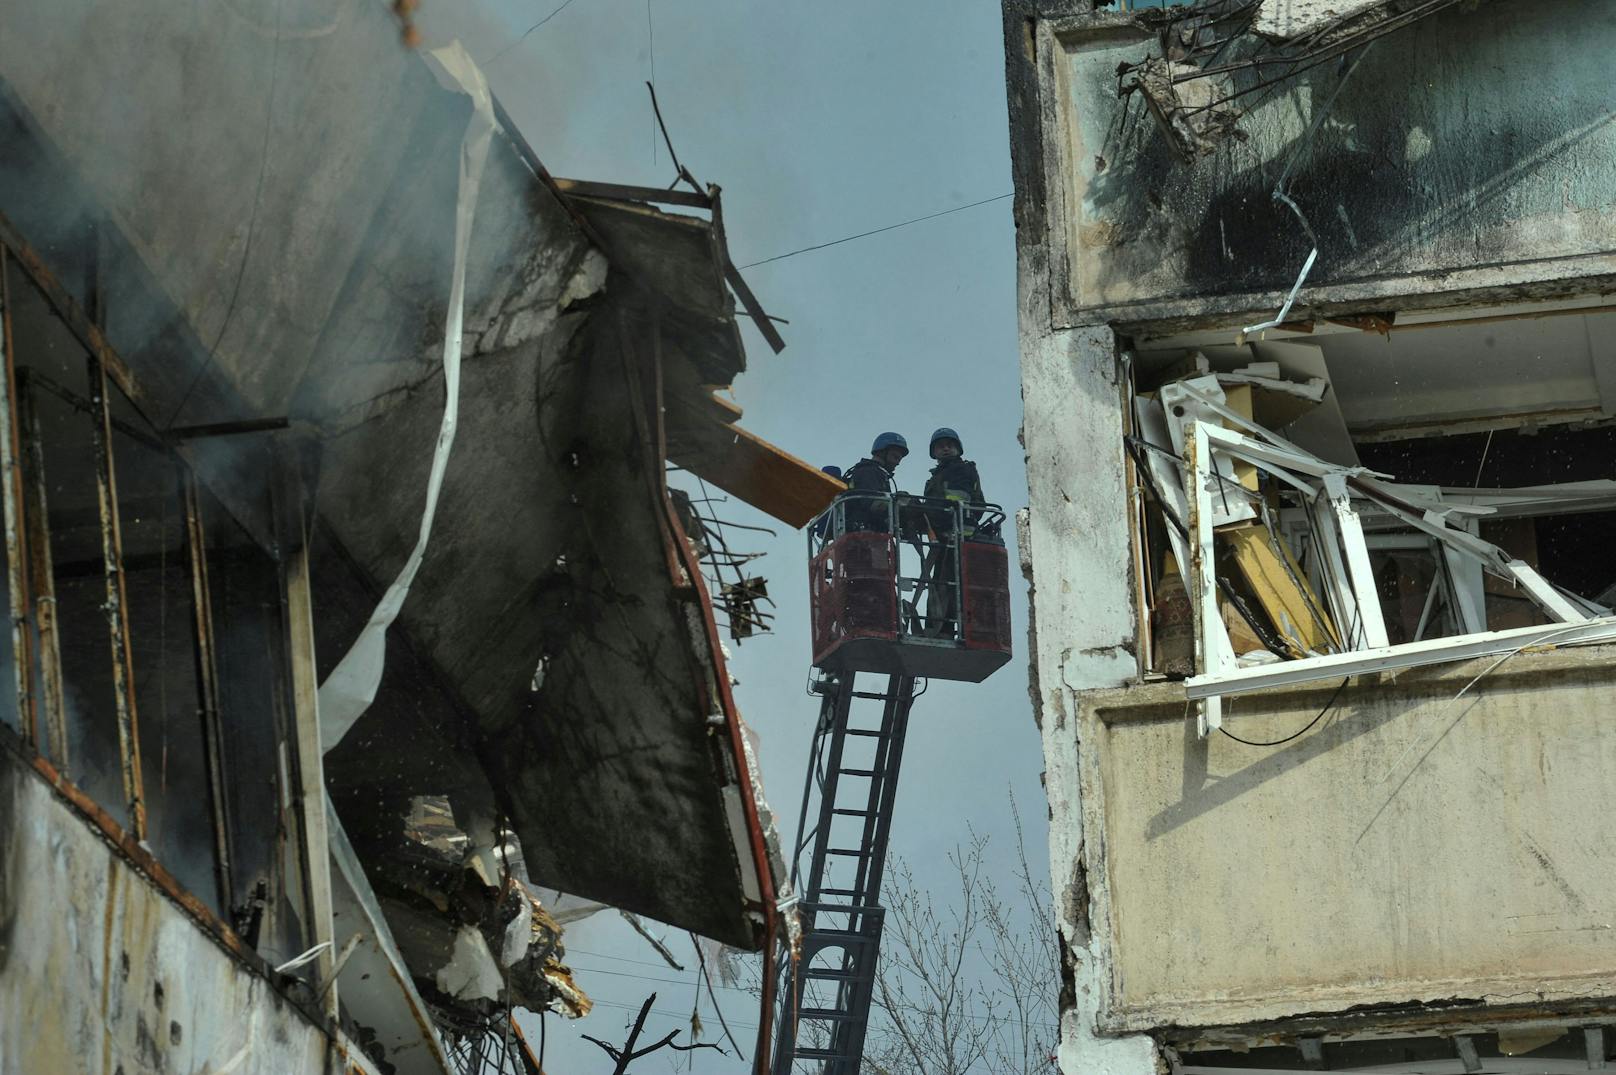 Bilder der Zerstörung, wie dieses aus Saporischschja im Süden der Ukraine, stehen an der Tagesordnung – der Wiederaufbau könnte richtig teuer werden.